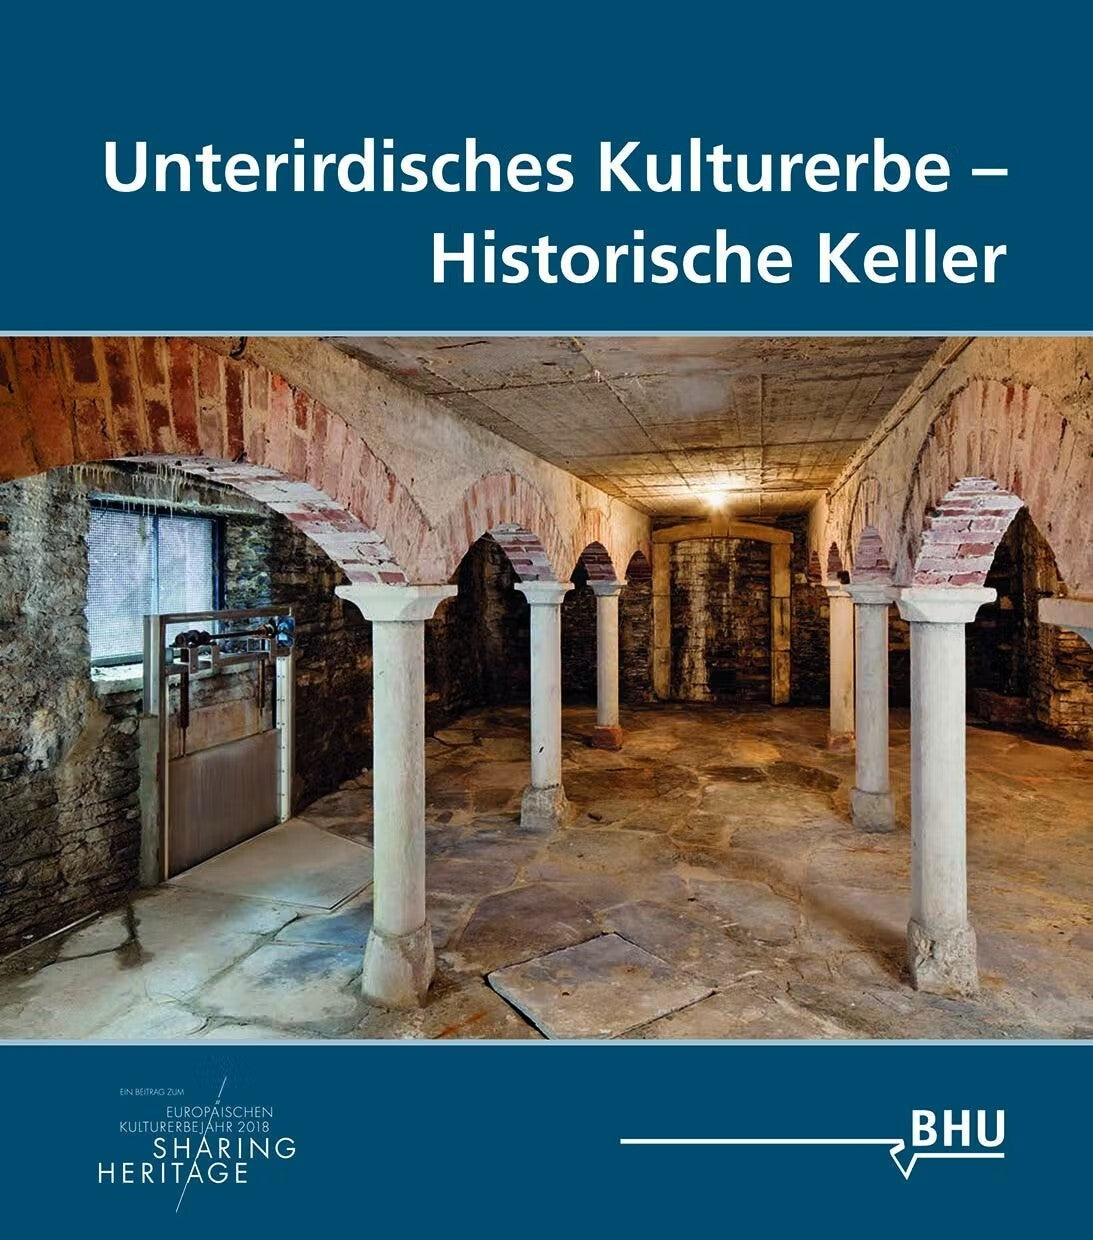 Unterirdische Kulturerbe - Historische Keller